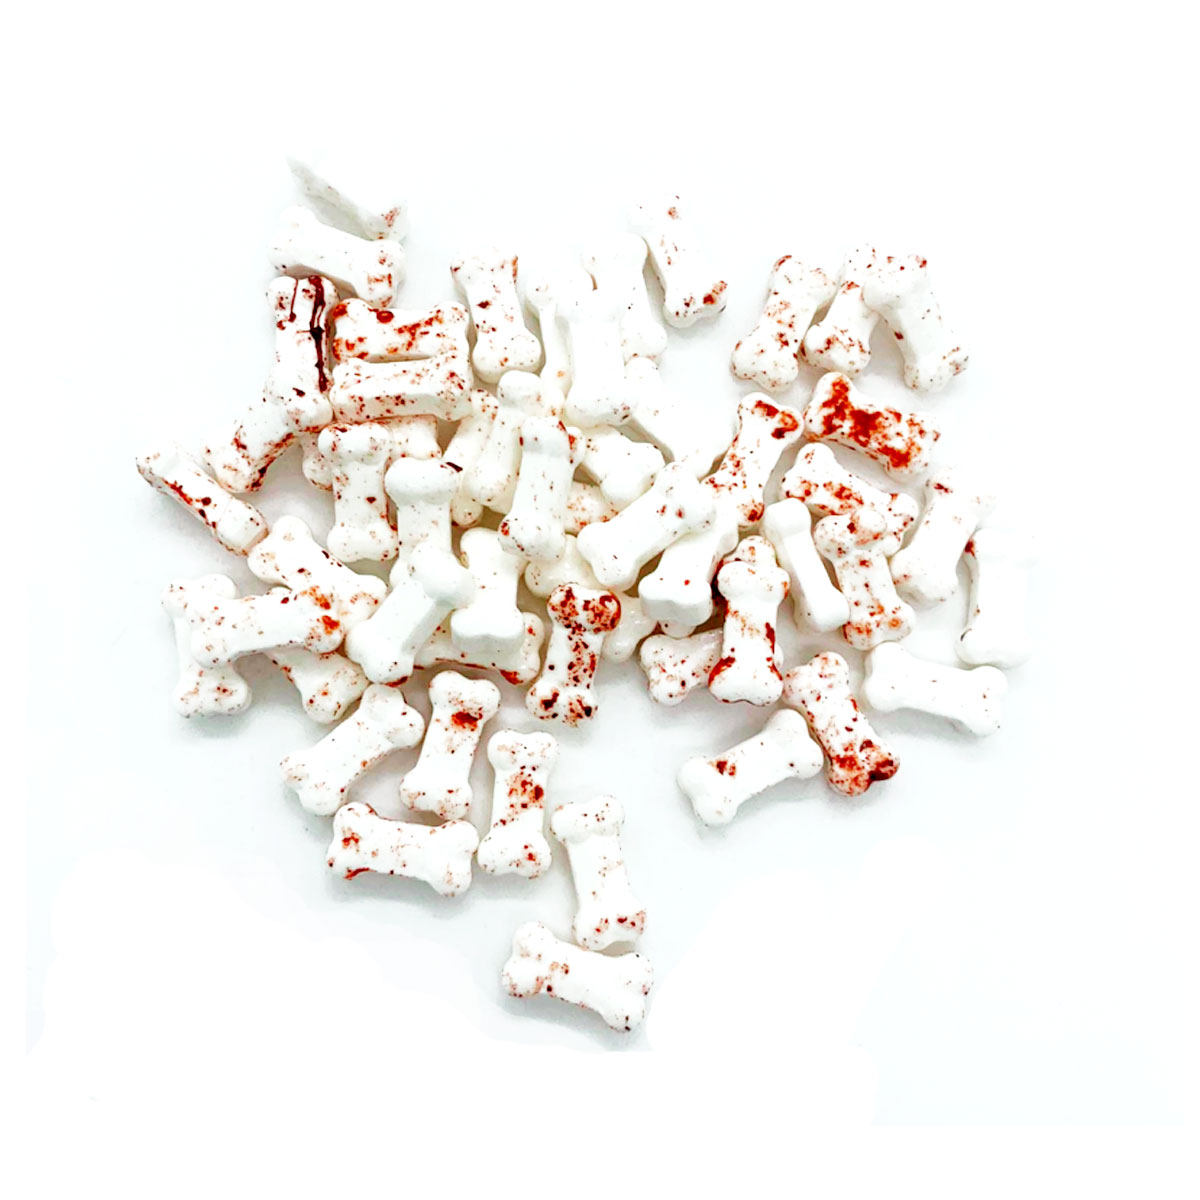 Azucren Halloween Zuckerdeko - Blutige Knochen 90g